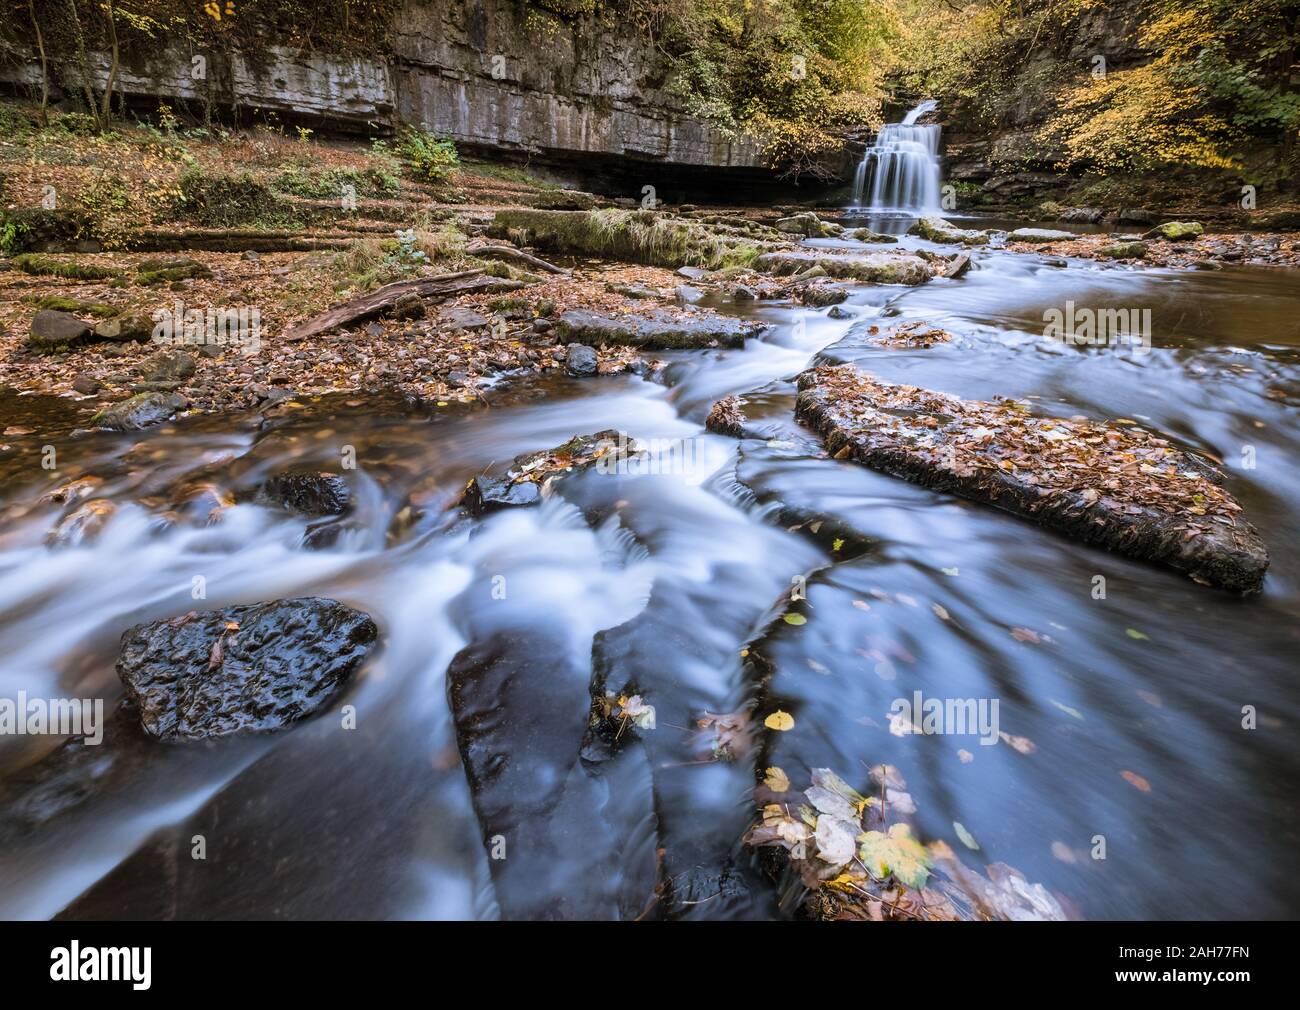 West Burton Falls, también conocido como Caldera Falls, con un atractivo follaje de otoño, Wensleydale, Yorkshire Dales National Park, Inglaterra, Reino Unido. Foto de stock